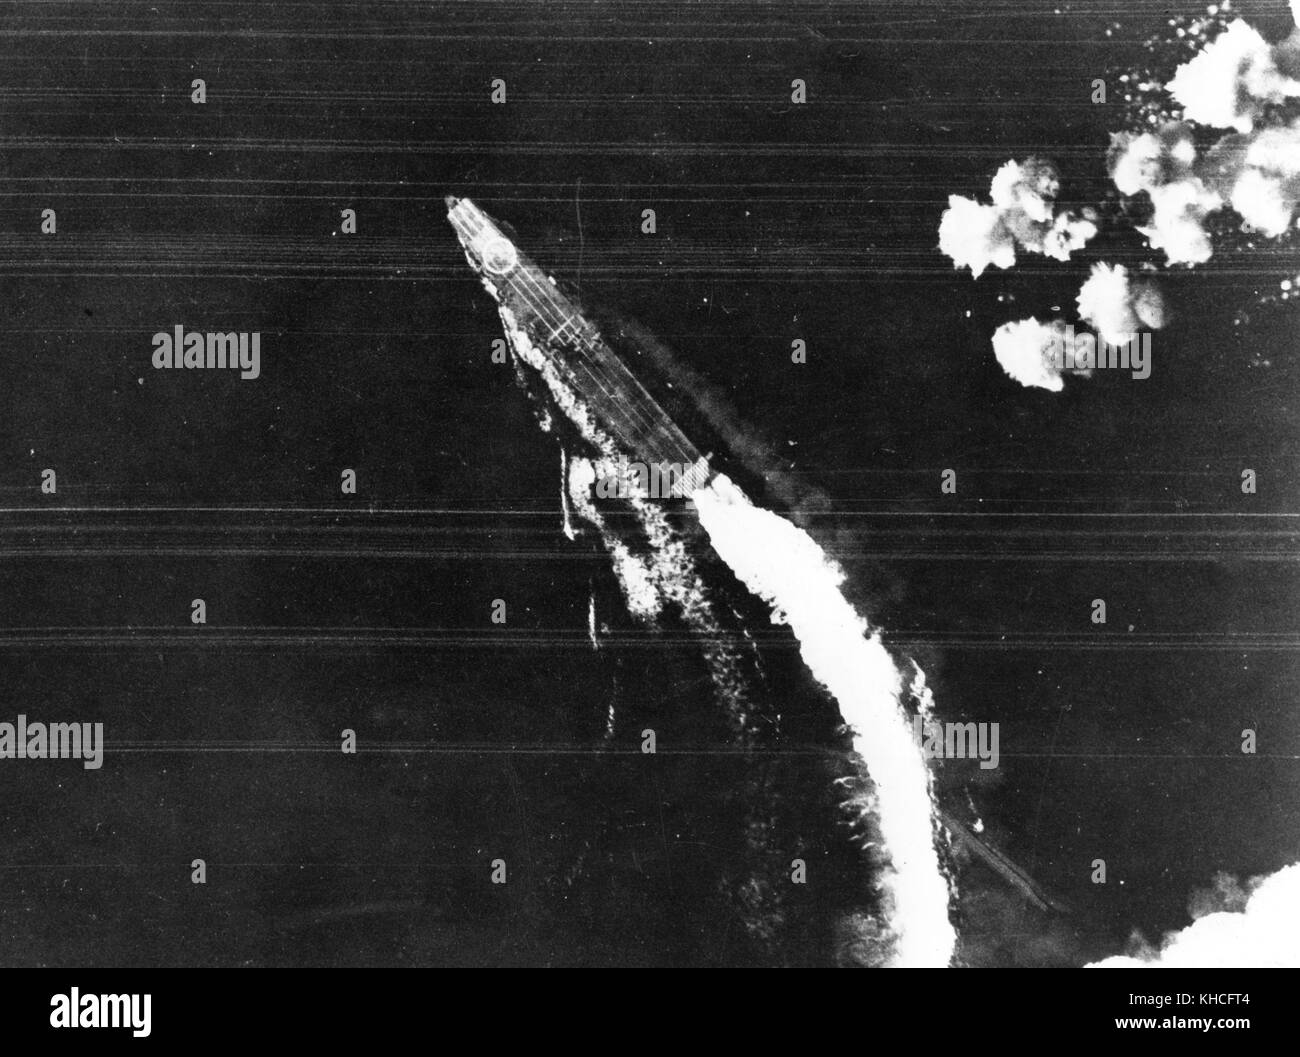 Der japanische Flugzeugträger Hiryu Manöver zu Bomben durch USAAF Boeing B-17 E Flying Fortress Bomber während der Schlacht um Midway vermieden, kurz nach 0800 Uhr, am 4. Juni 1942. Beachten Sie die große hinomaru Markierung am Bug, die Katakana Identifikation Charakter "Hi" auf Ihrem nach Flight Deck, und mindestens drei Ebenen an Deck. Stockfoto